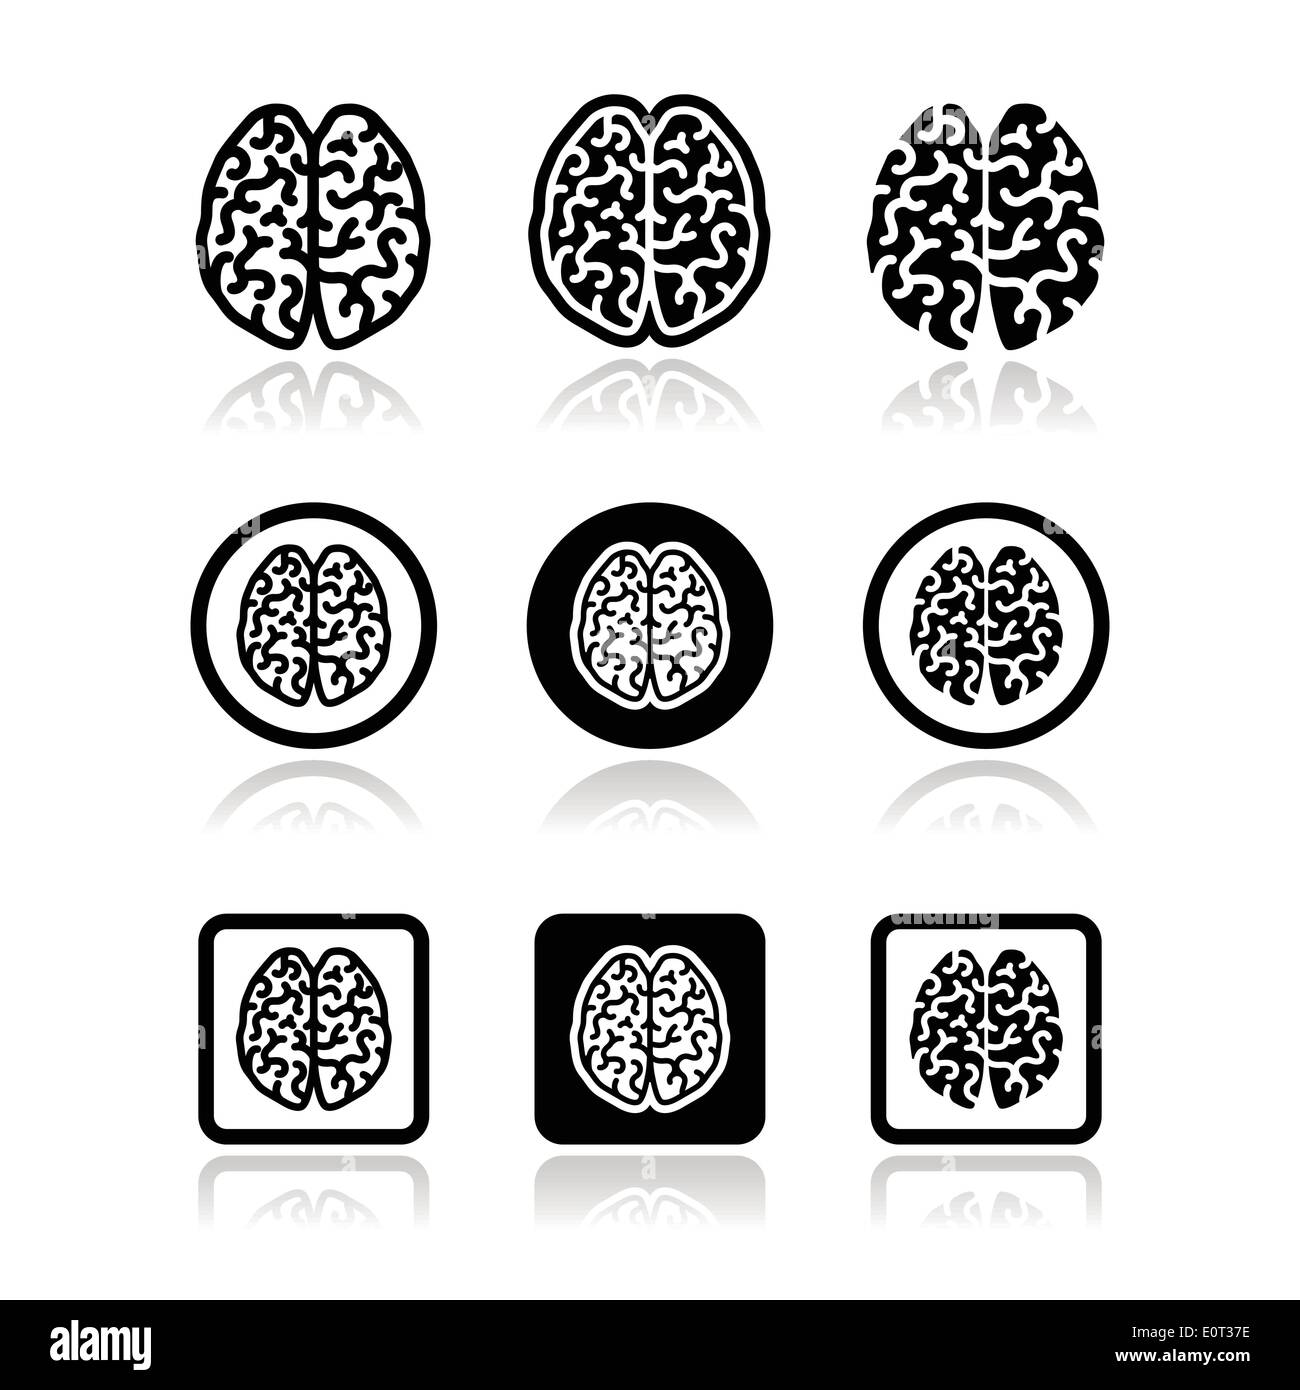 Menschlichen Gehirns Icons set - Intelligenz, Kreativität-Konzept Stock Vektor